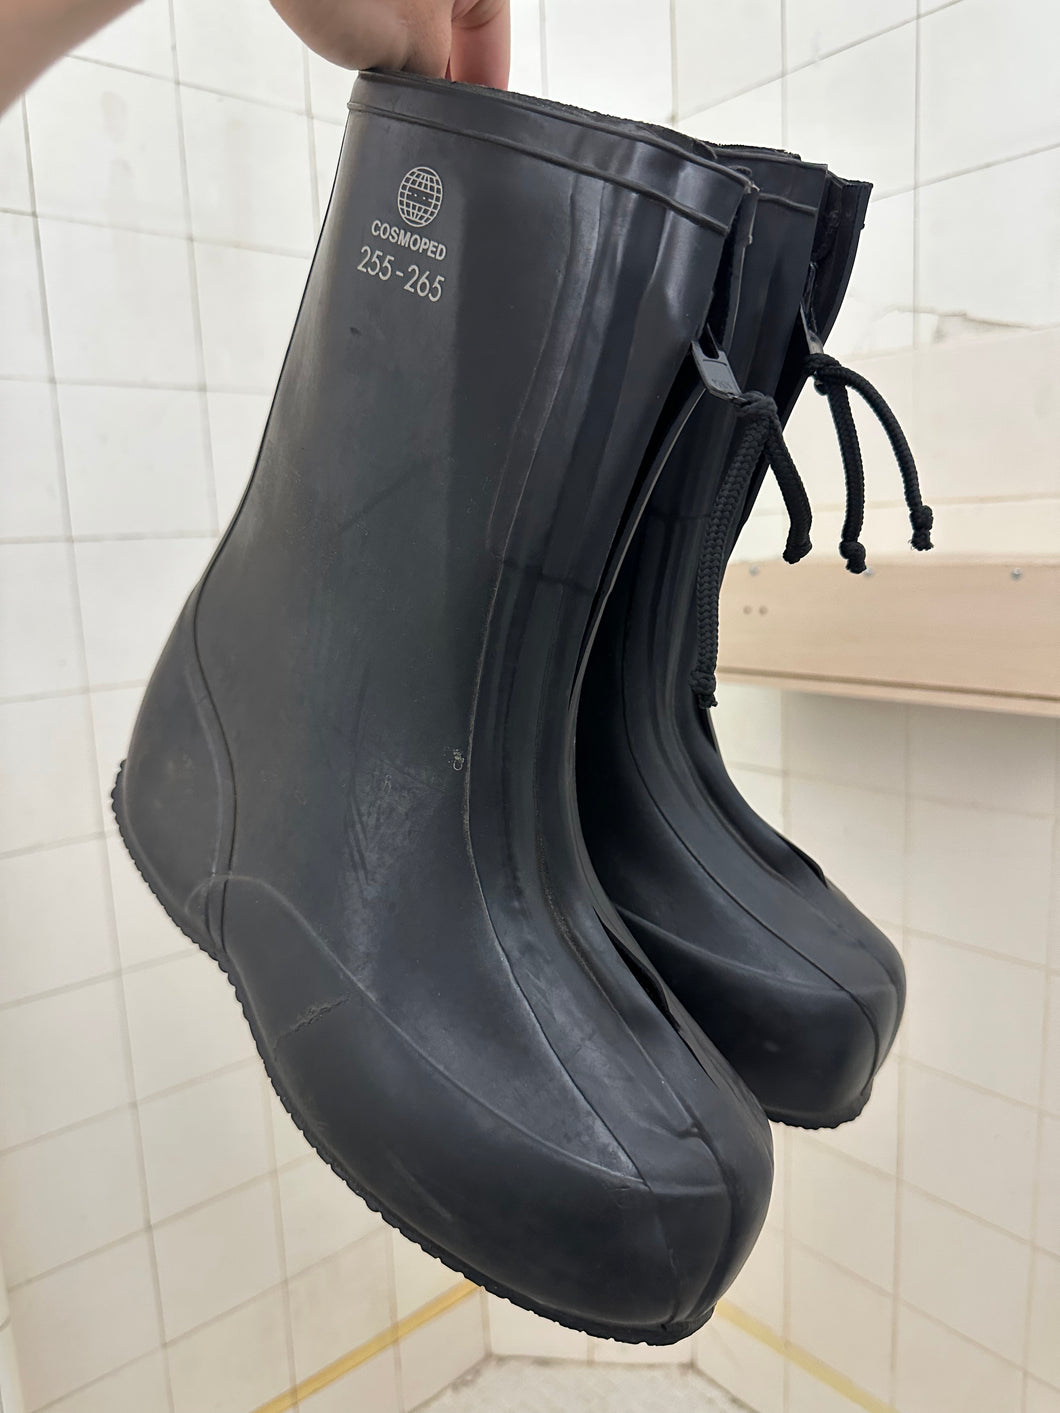 Vintage 1980s Military Waterproof Overshoes